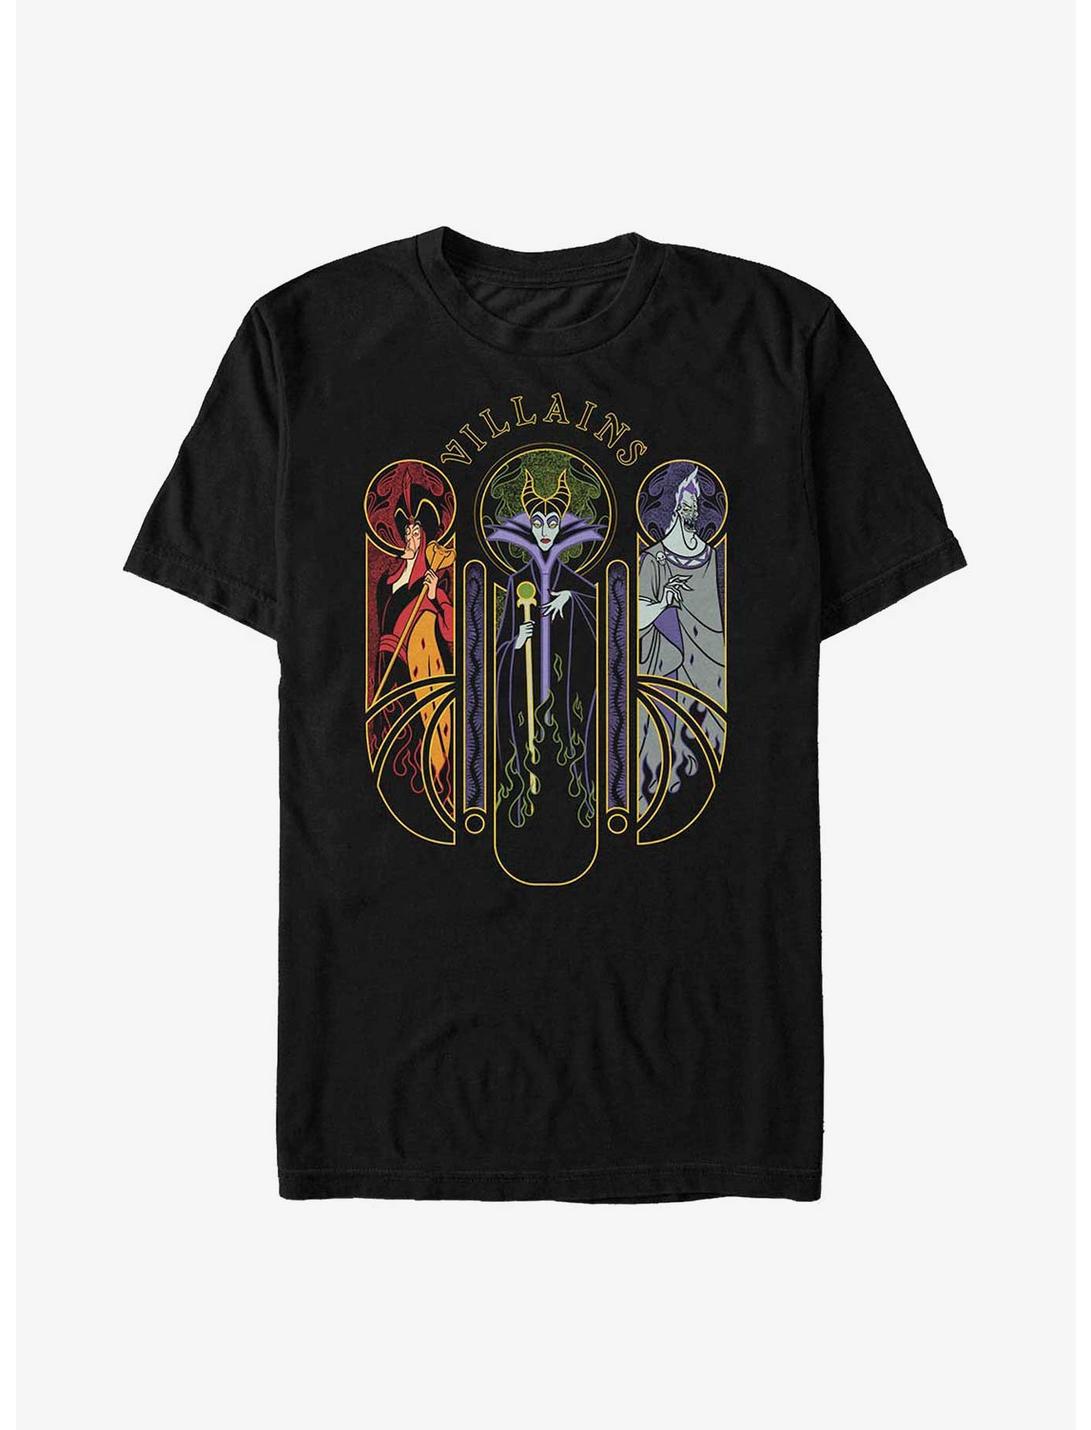 Disney Villains Jafar, Maleficent, and Hades Nouveau Triptych T-Shirt, BLACK, hi-res